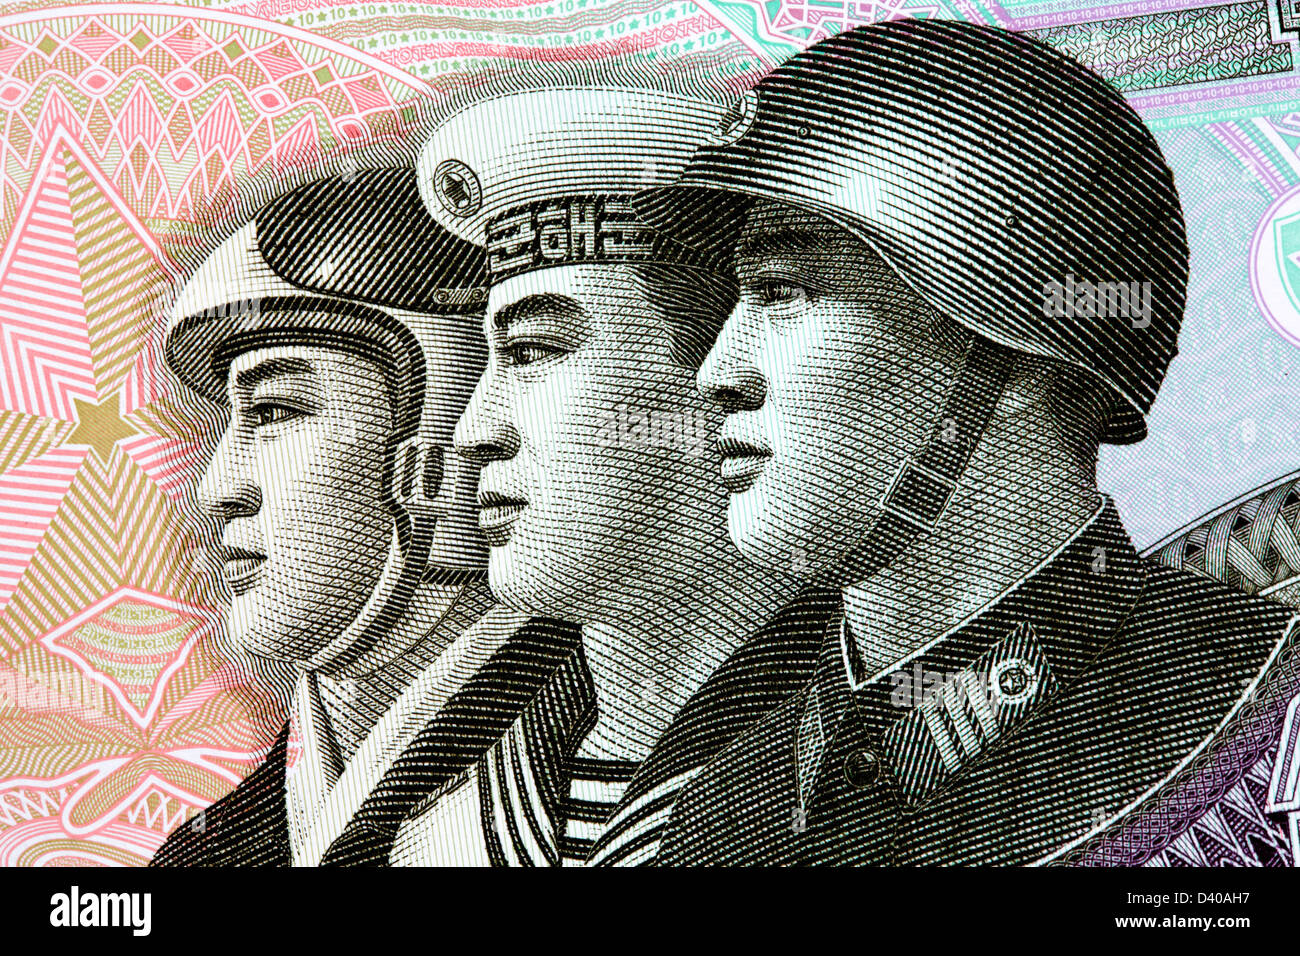 Tre uomini militare Air Force, della marina e dell'esercito da 10 ha vinto la banconota, Corea del Nord, 2002 Foto Stock